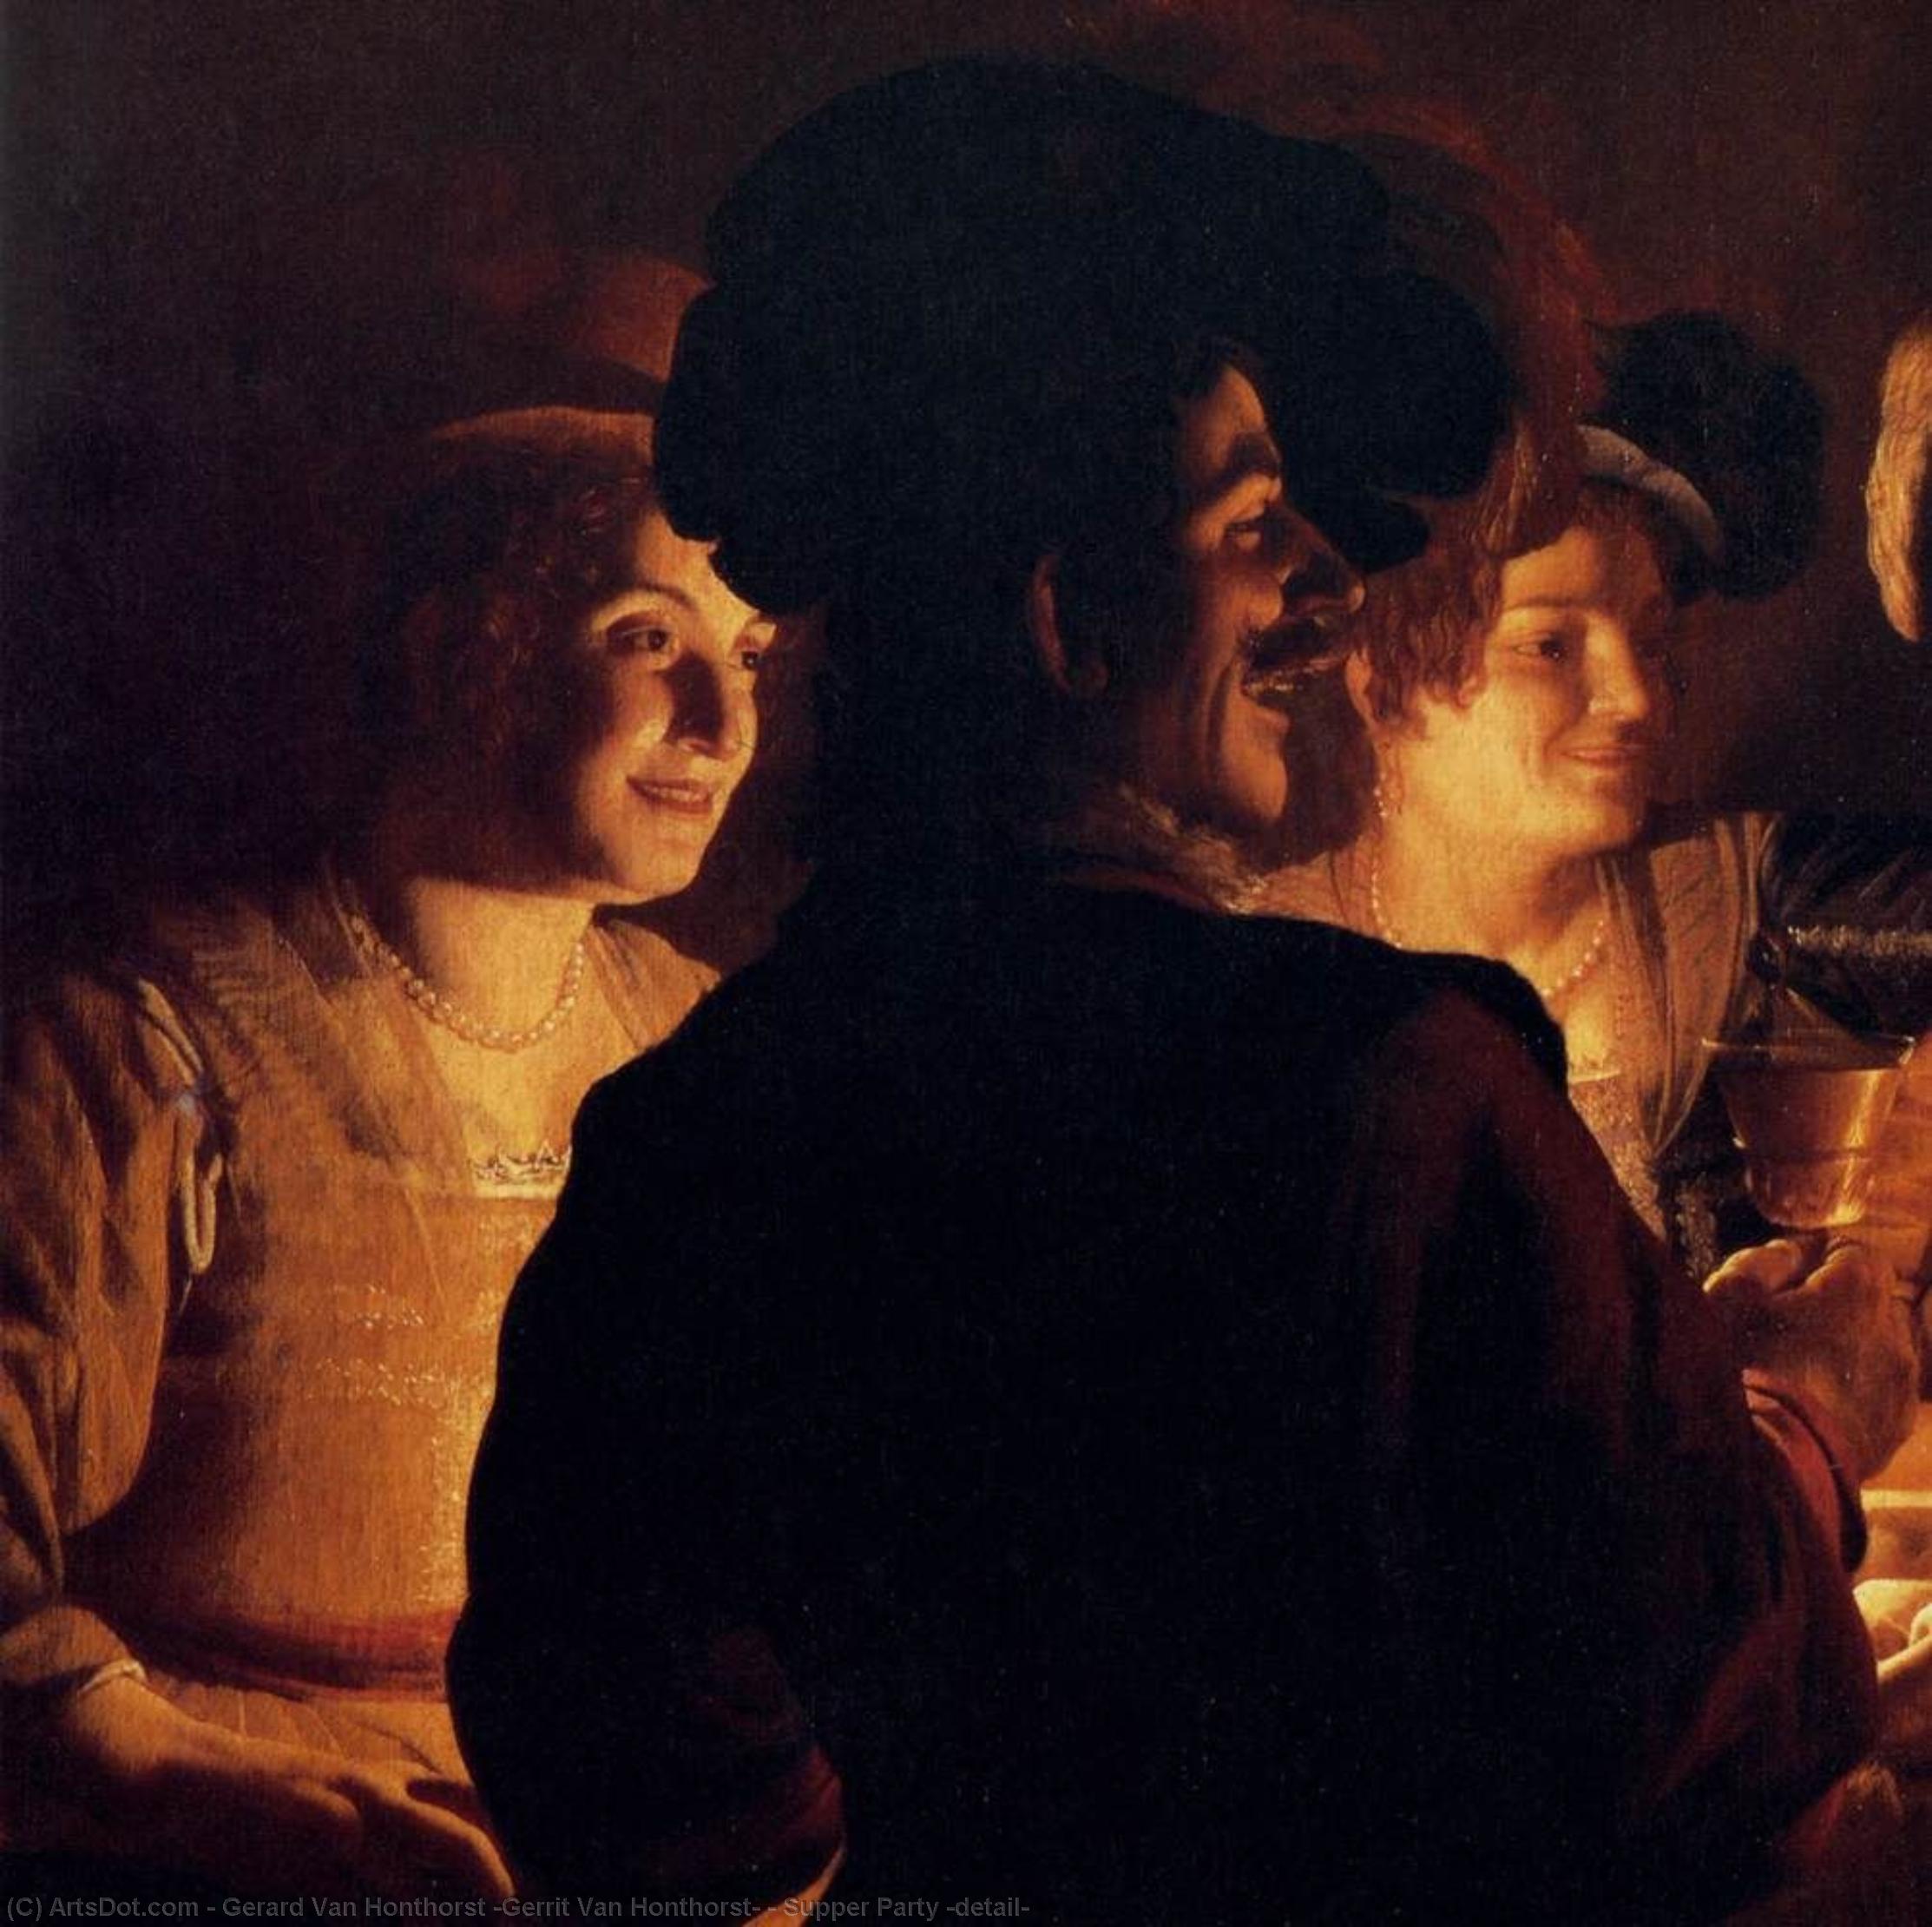 WikiOO.org - Enciklopedija dailės - Tapyba, meno kuriniai Gerard Van Honthorst (Gerrit Van Honthorst) - Supper Party (detail)